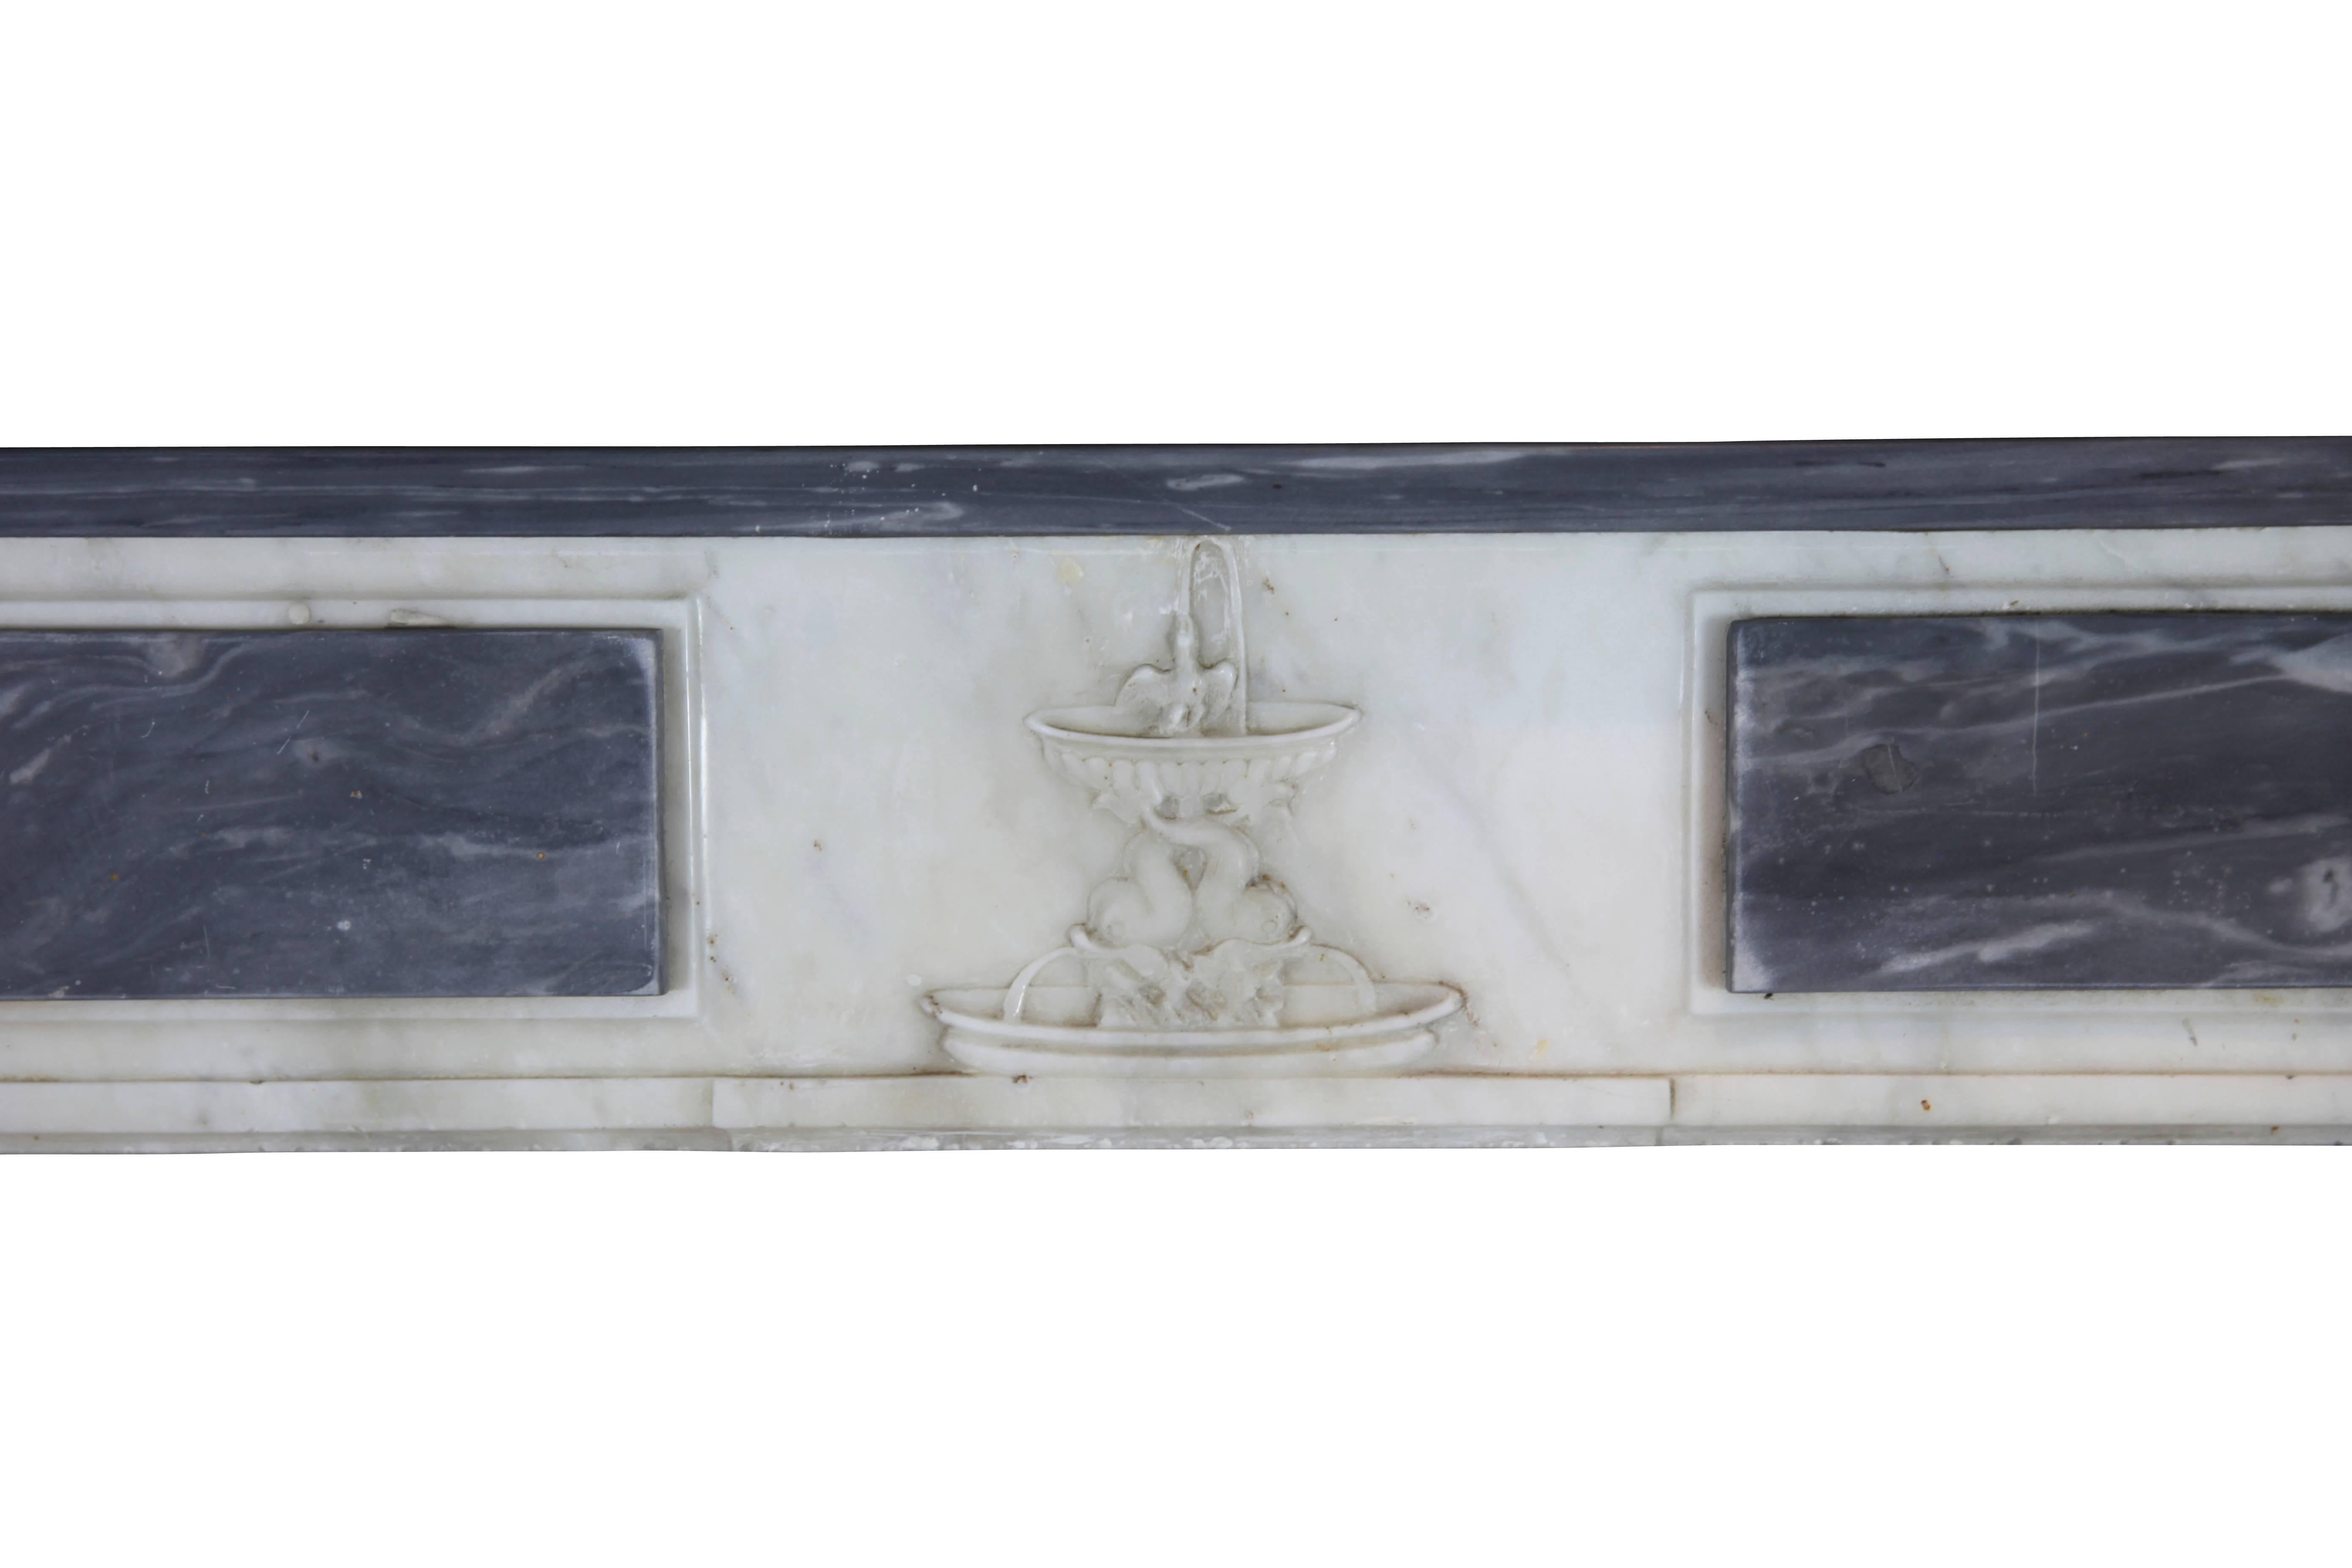 La belle cheminée ancienne d'origine est unique en son genre.
La combinaison du marbre Bleu Turquin avec le marbre Blanc de Carrare est parfaite.
La fine sculpture de la pièce centrale qui amène une fontaine et le médaillon aux extrémités de la